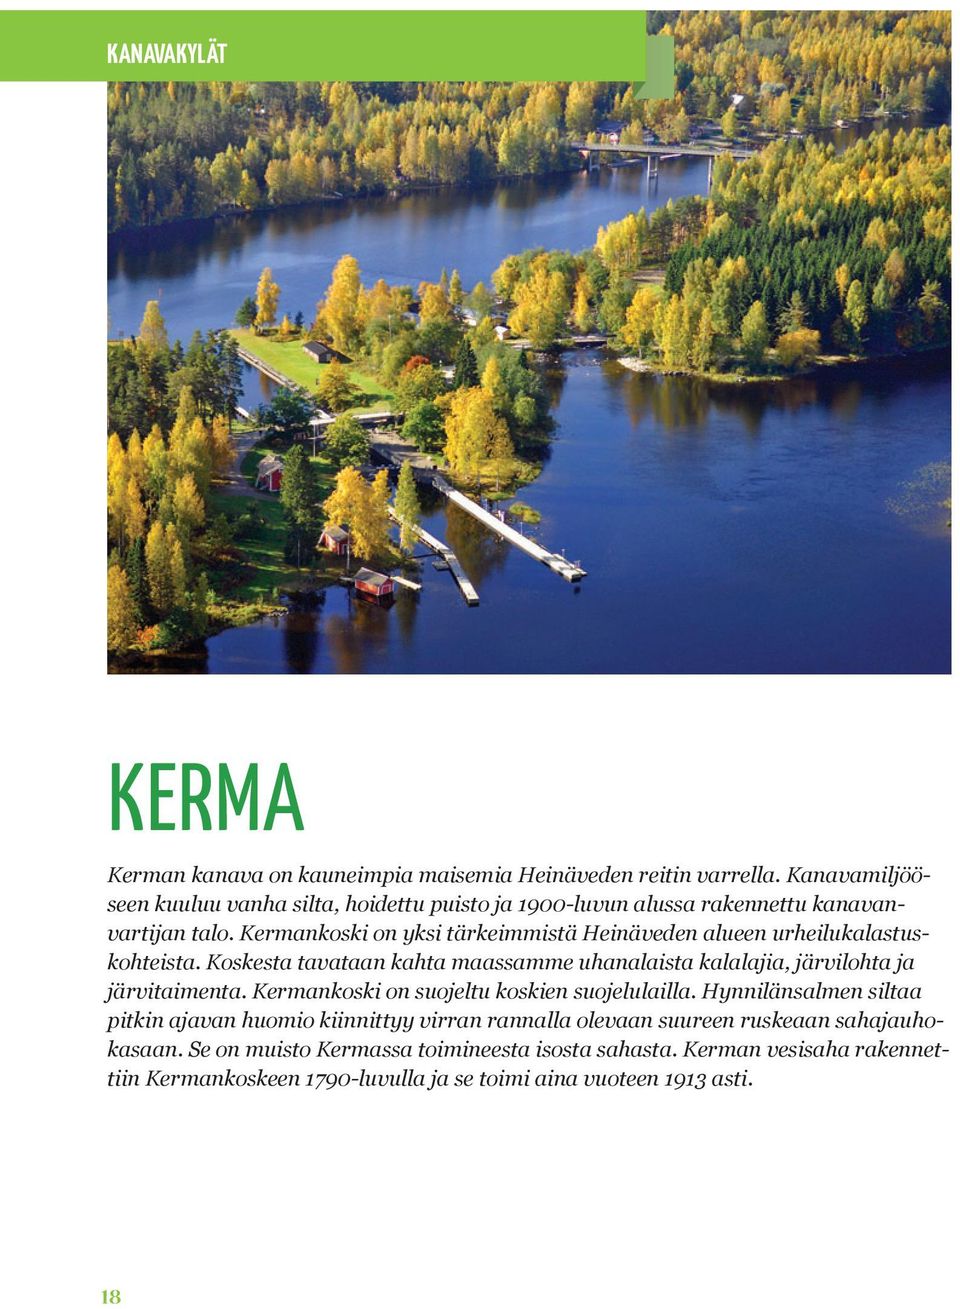 Kermankoski on yksi tärkeimmistä Heinäveden alueen urheilukalastuskohteista. Koskesta tavataan kahta maassamme uhanalaista kalalajia, järvilohta ja järvitaimenta.